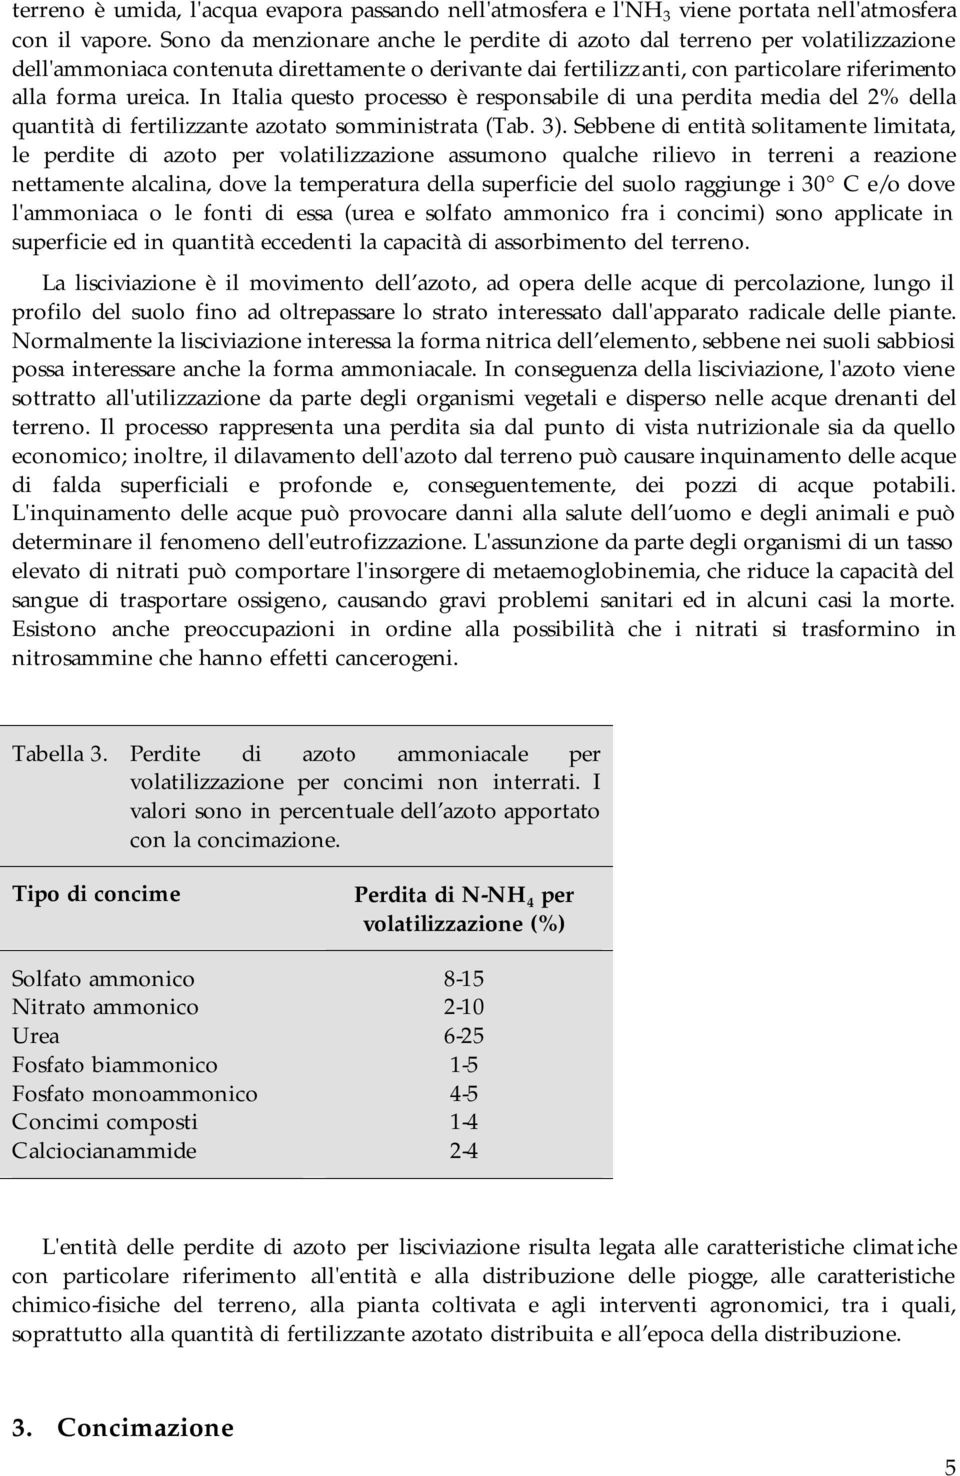 In Italia questo processo è responsabile di una perdita media del 2% della quantità di fertilizzante azotato somministrata (Tab. 3).